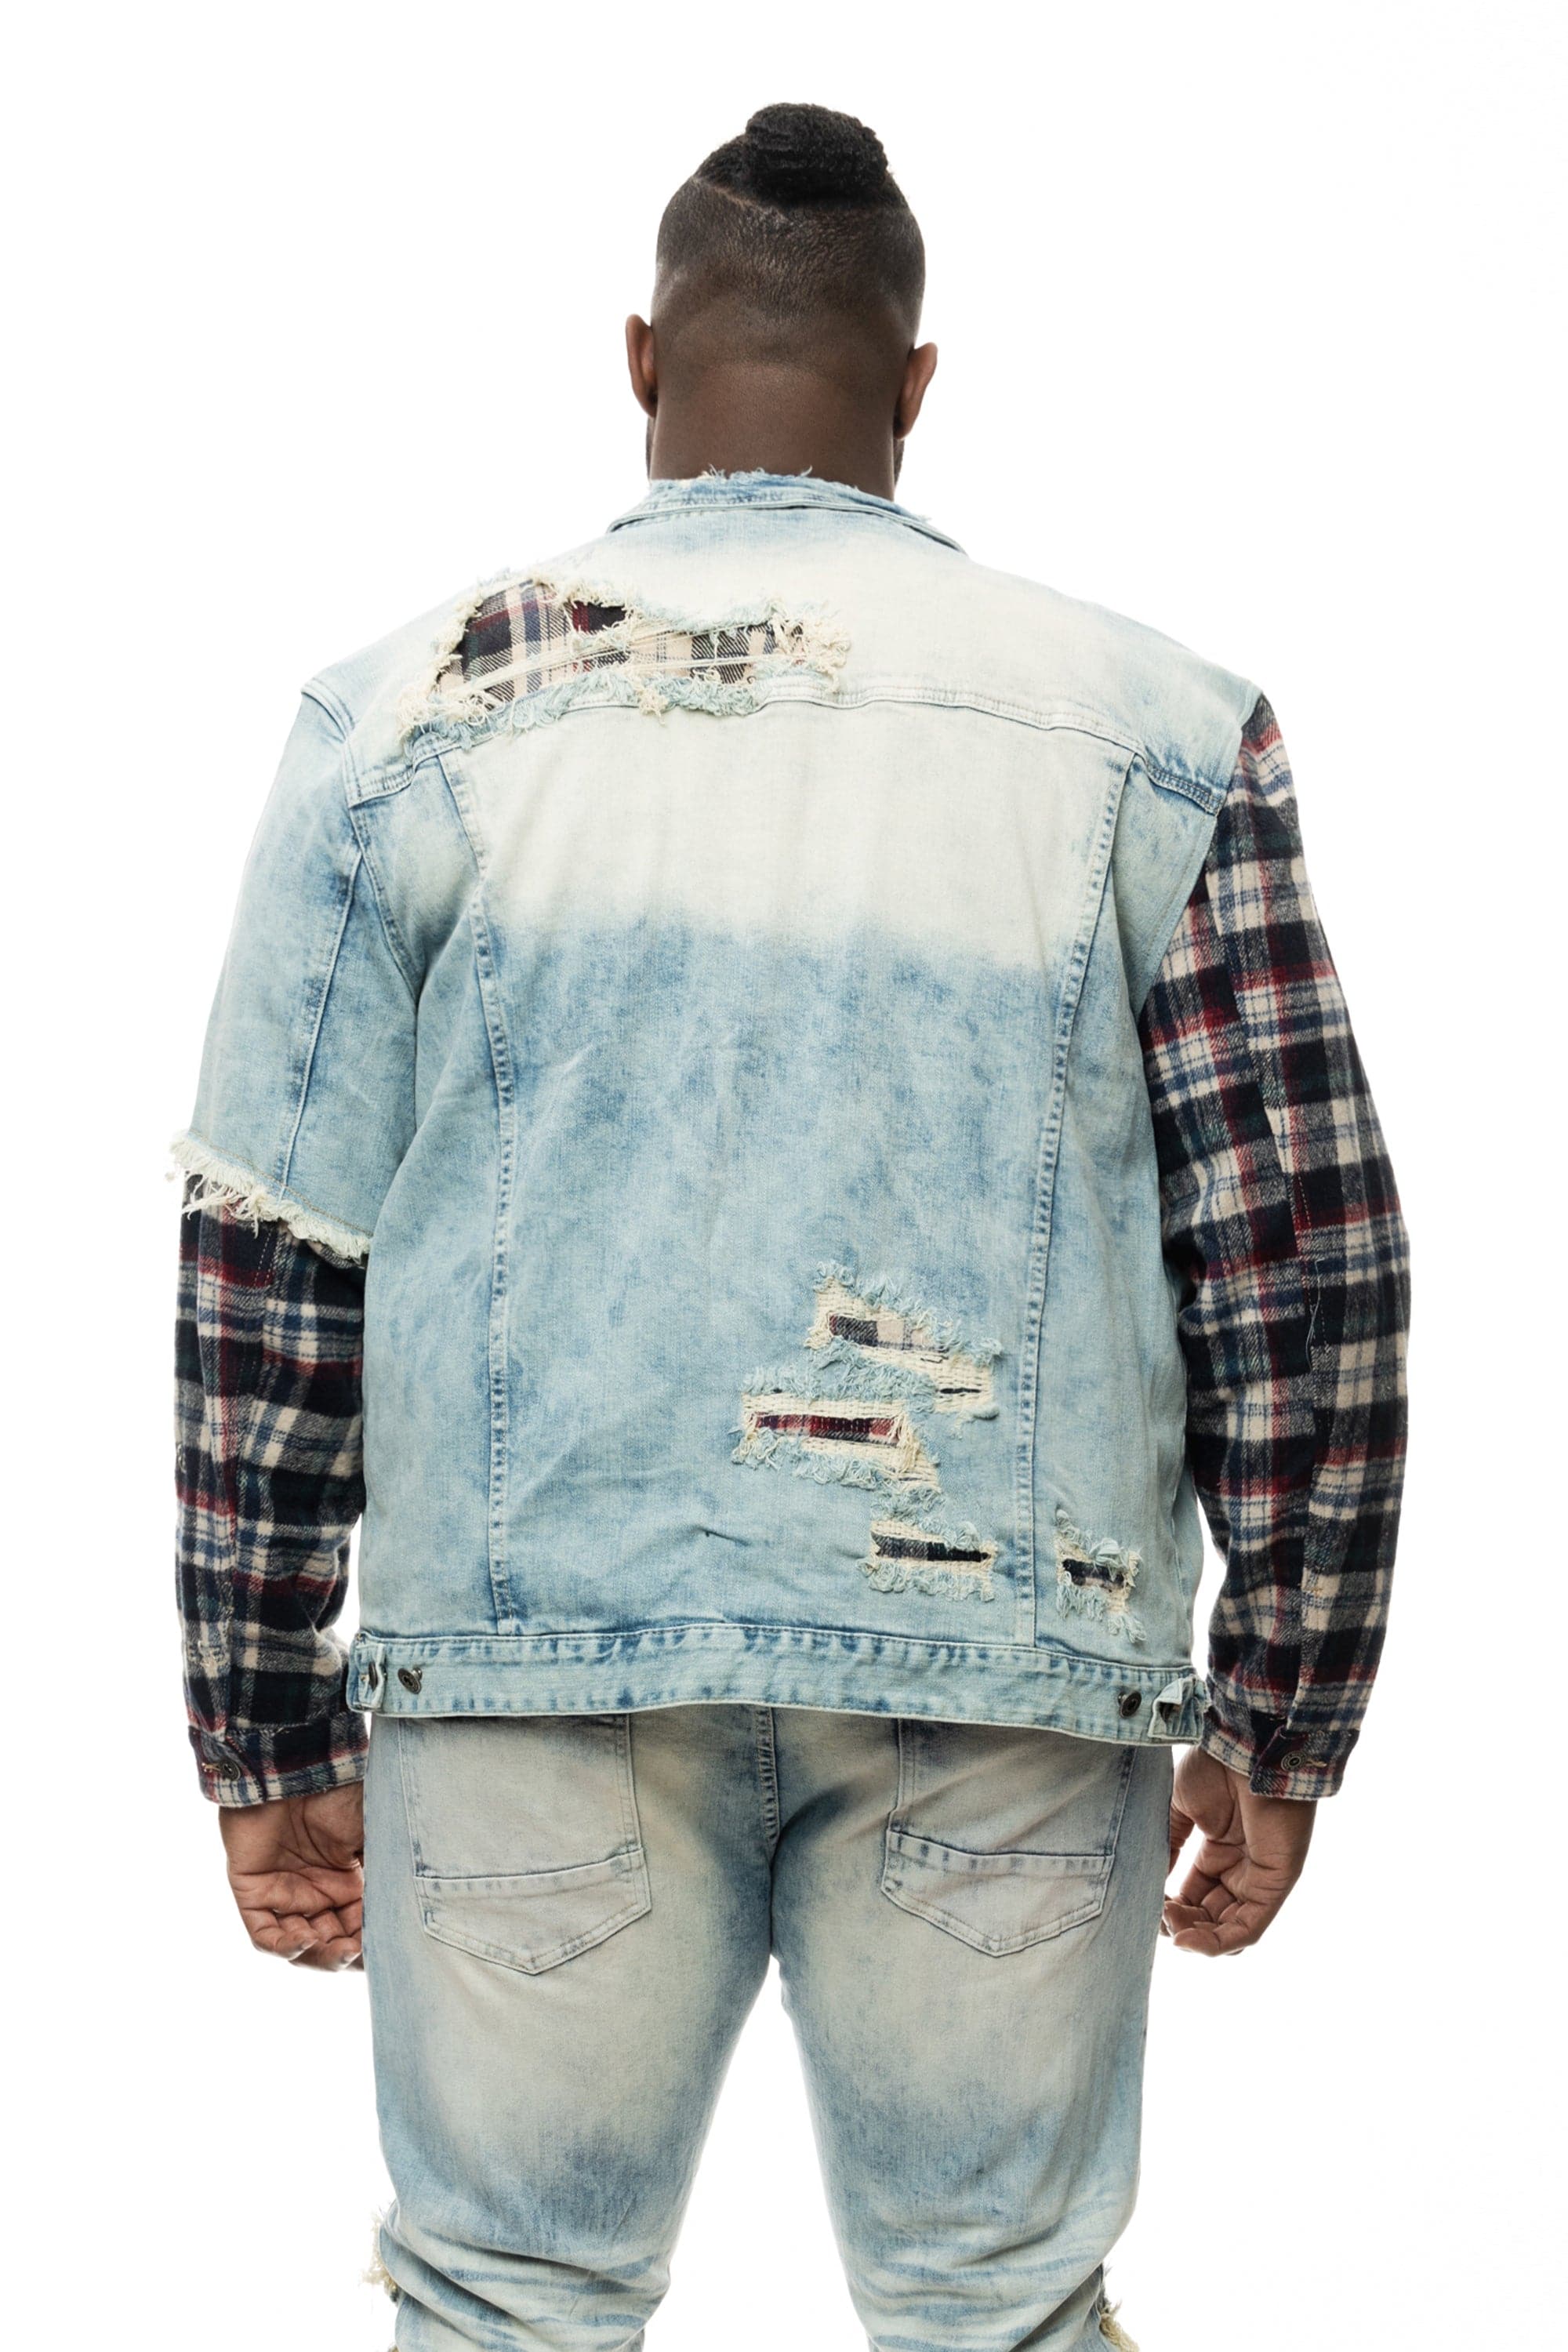 Mixed Media Tweed/Denim Jacket by FDJ – MeadowCreek Clothiers